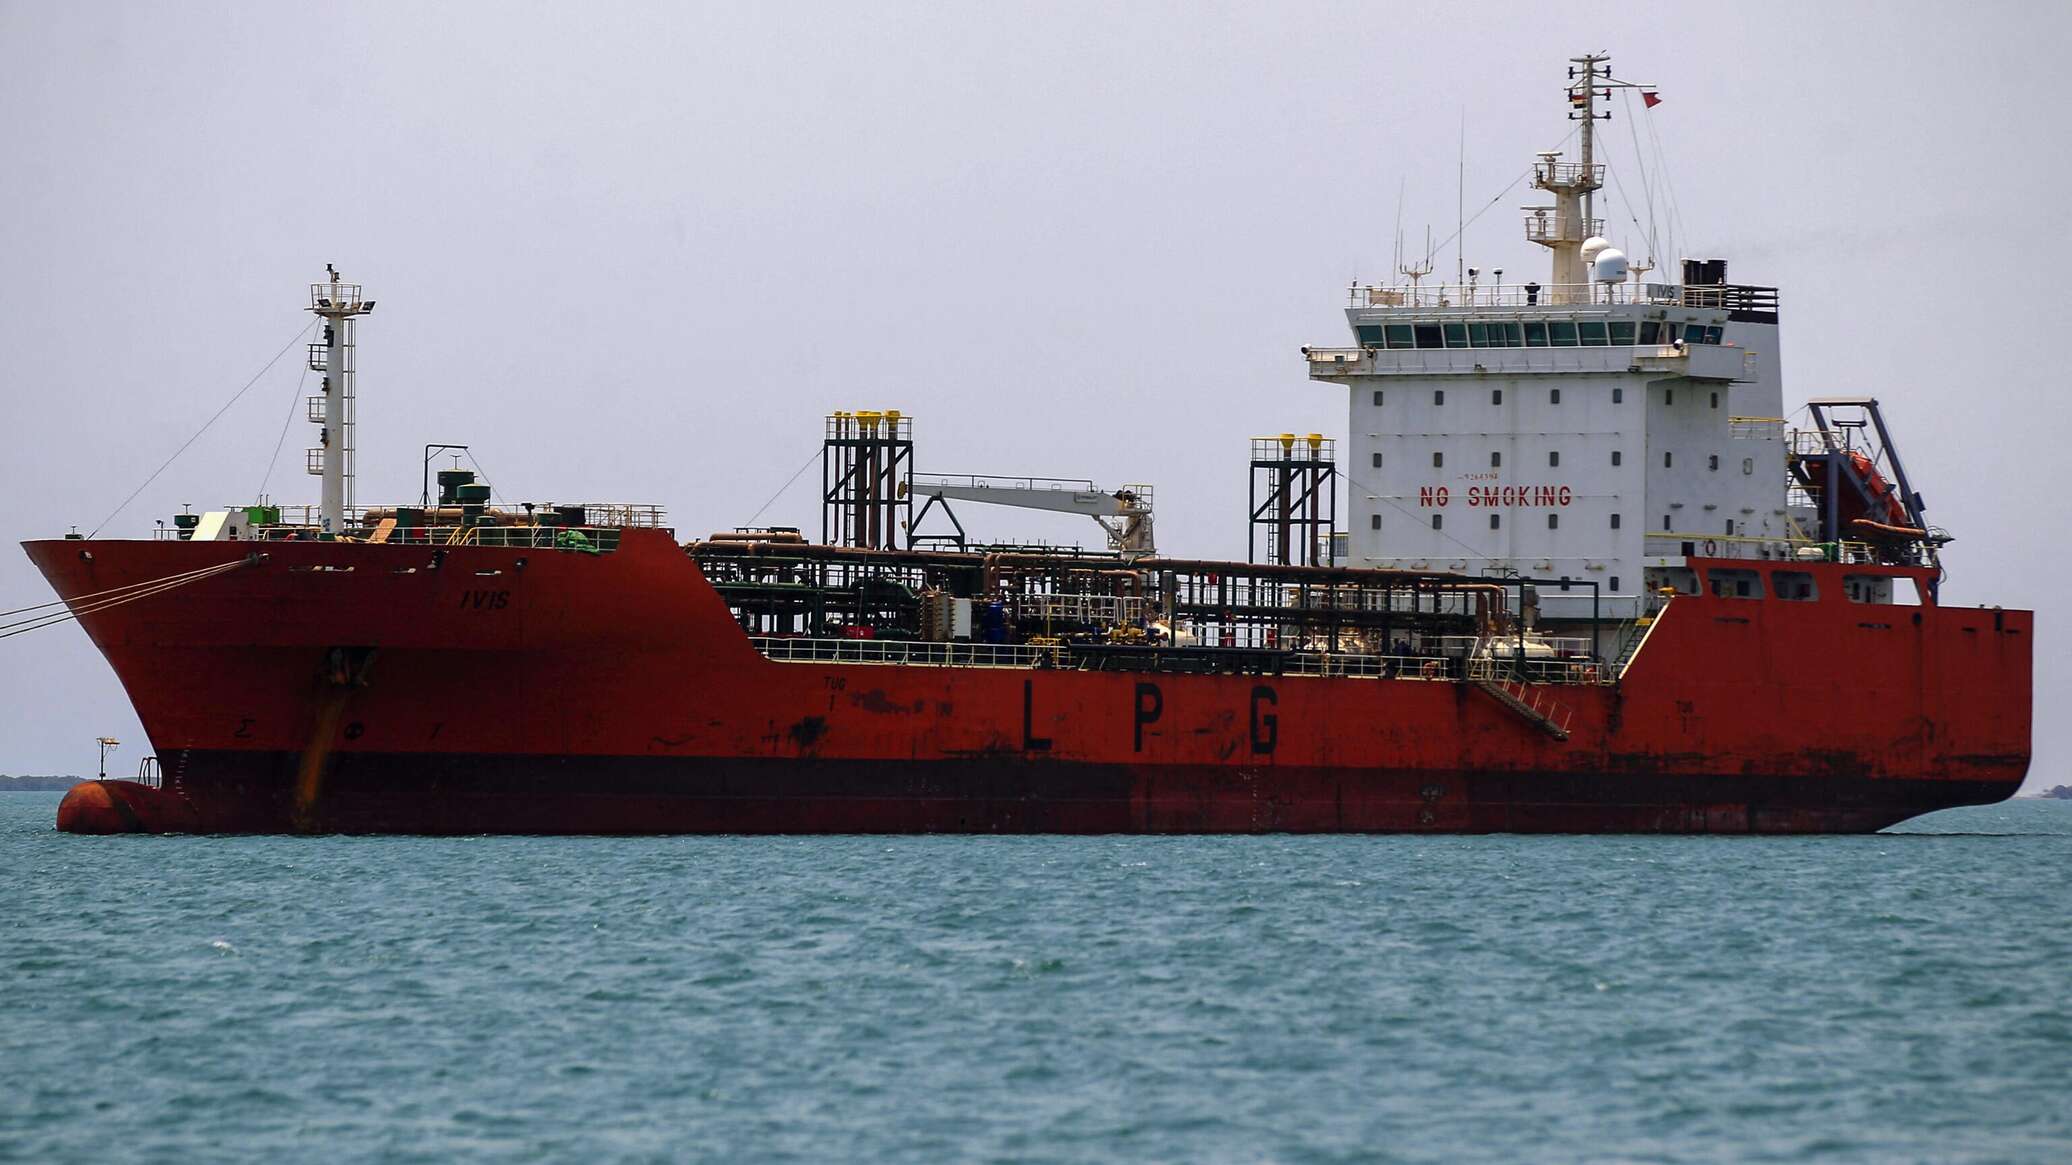 "أنصار الله" اليمنية: هاجمنا سفينة كانت في طريقها إلى إسرائيل وحققنا "إصابة مباشرة"